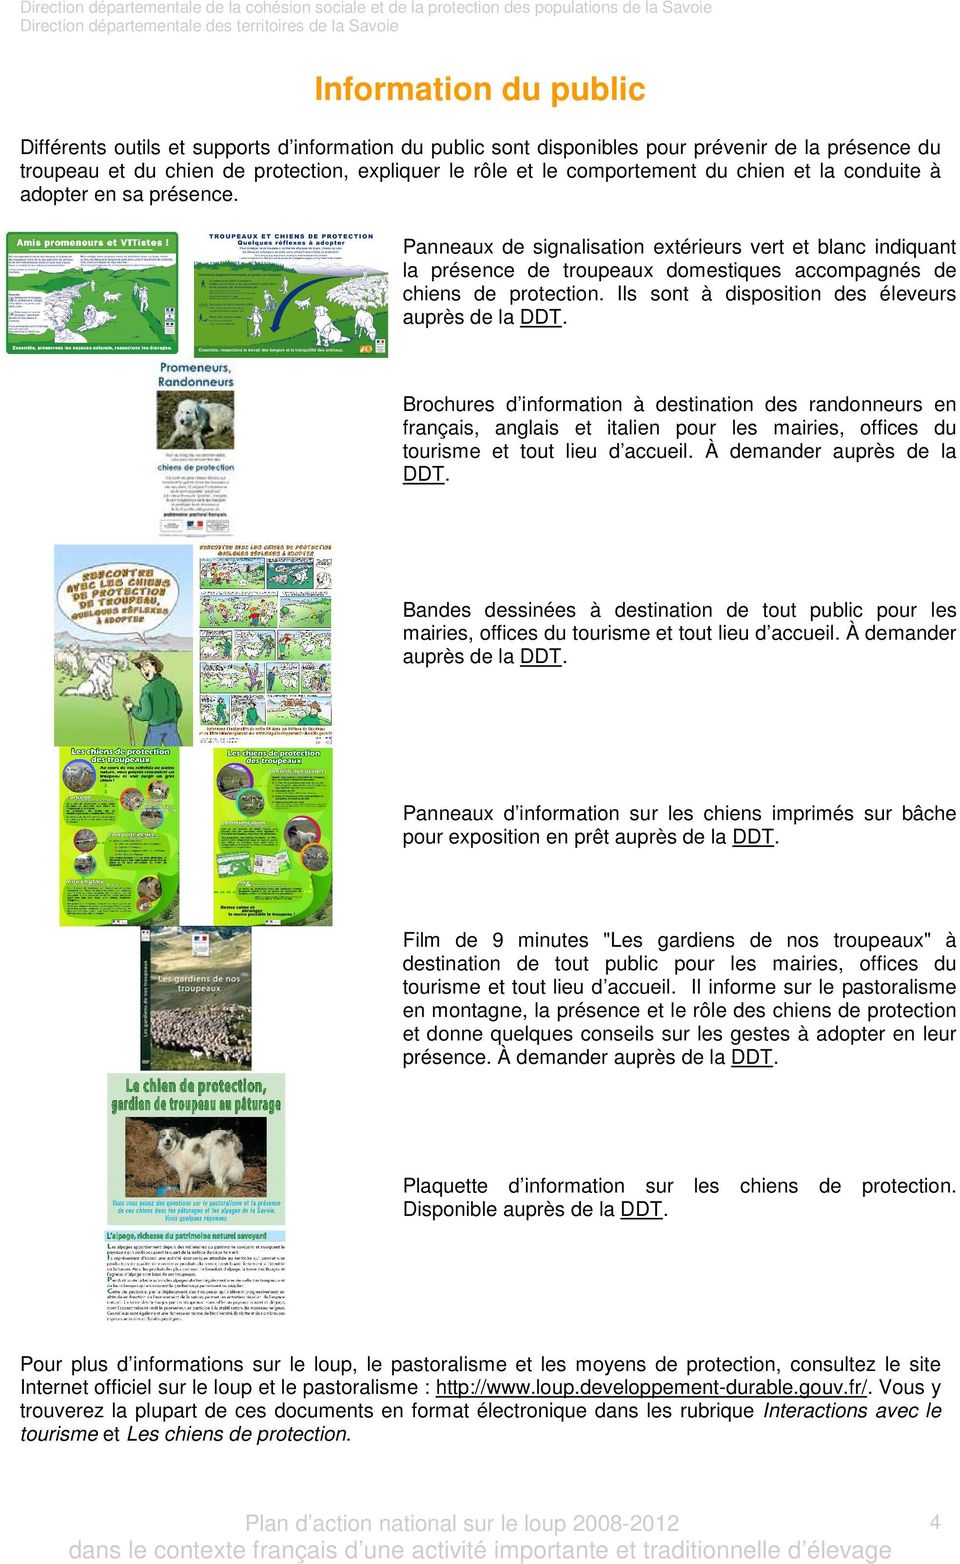 Panneaux de signalisation extérieurs vert et blanc indiquant la présence de troupeaux domestiques accompagnés de chiens de protection. Ils sont à disposition des éleveurs auprès de la DDT.